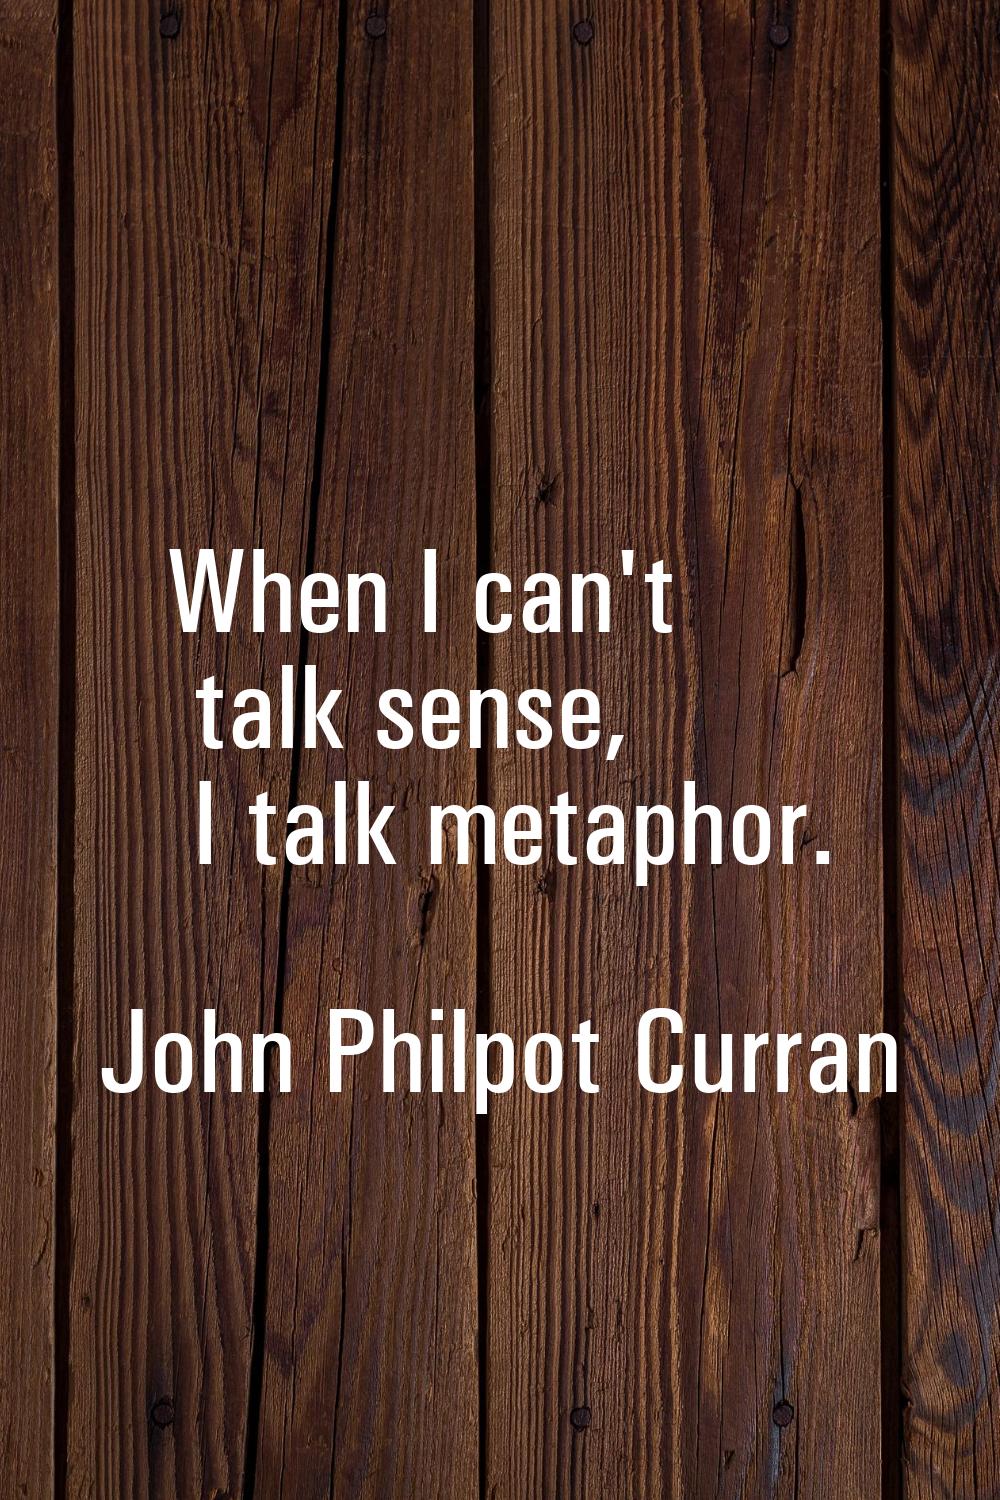 When I can't talk sense, I talk metaphor.